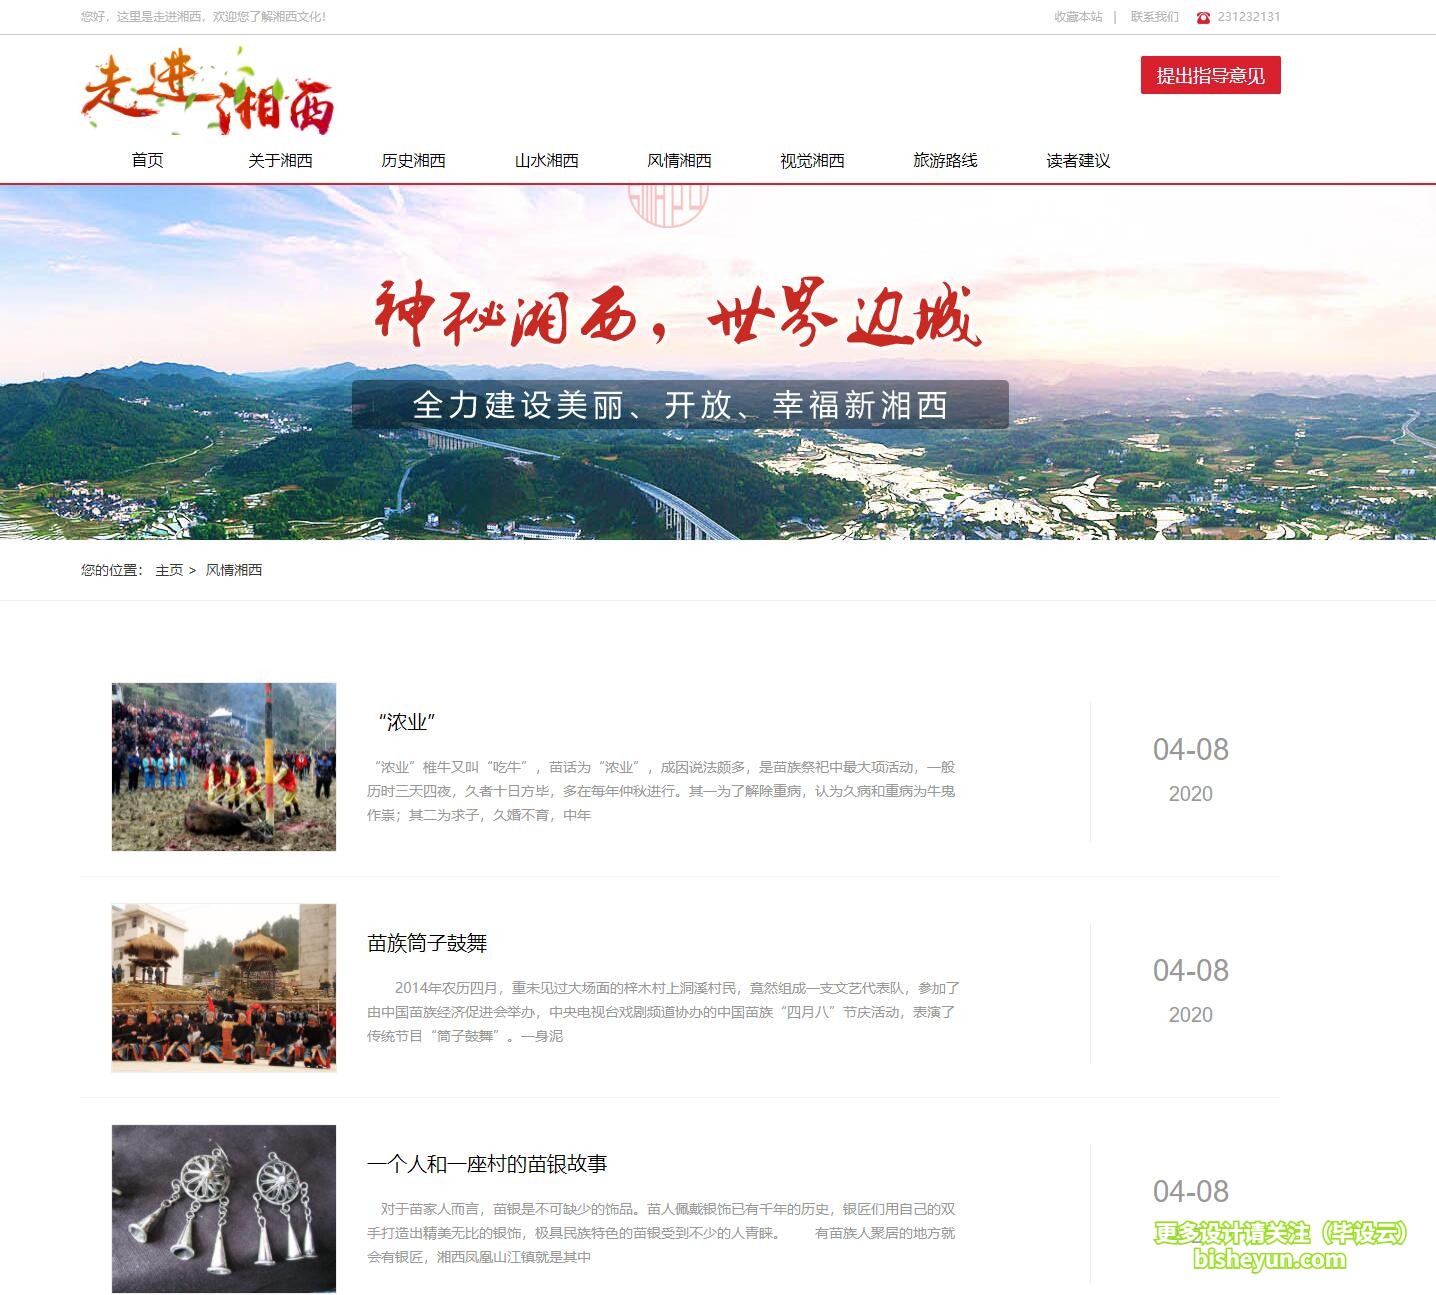 基于php湘西旅游网站管理系统-湘西风情介绍